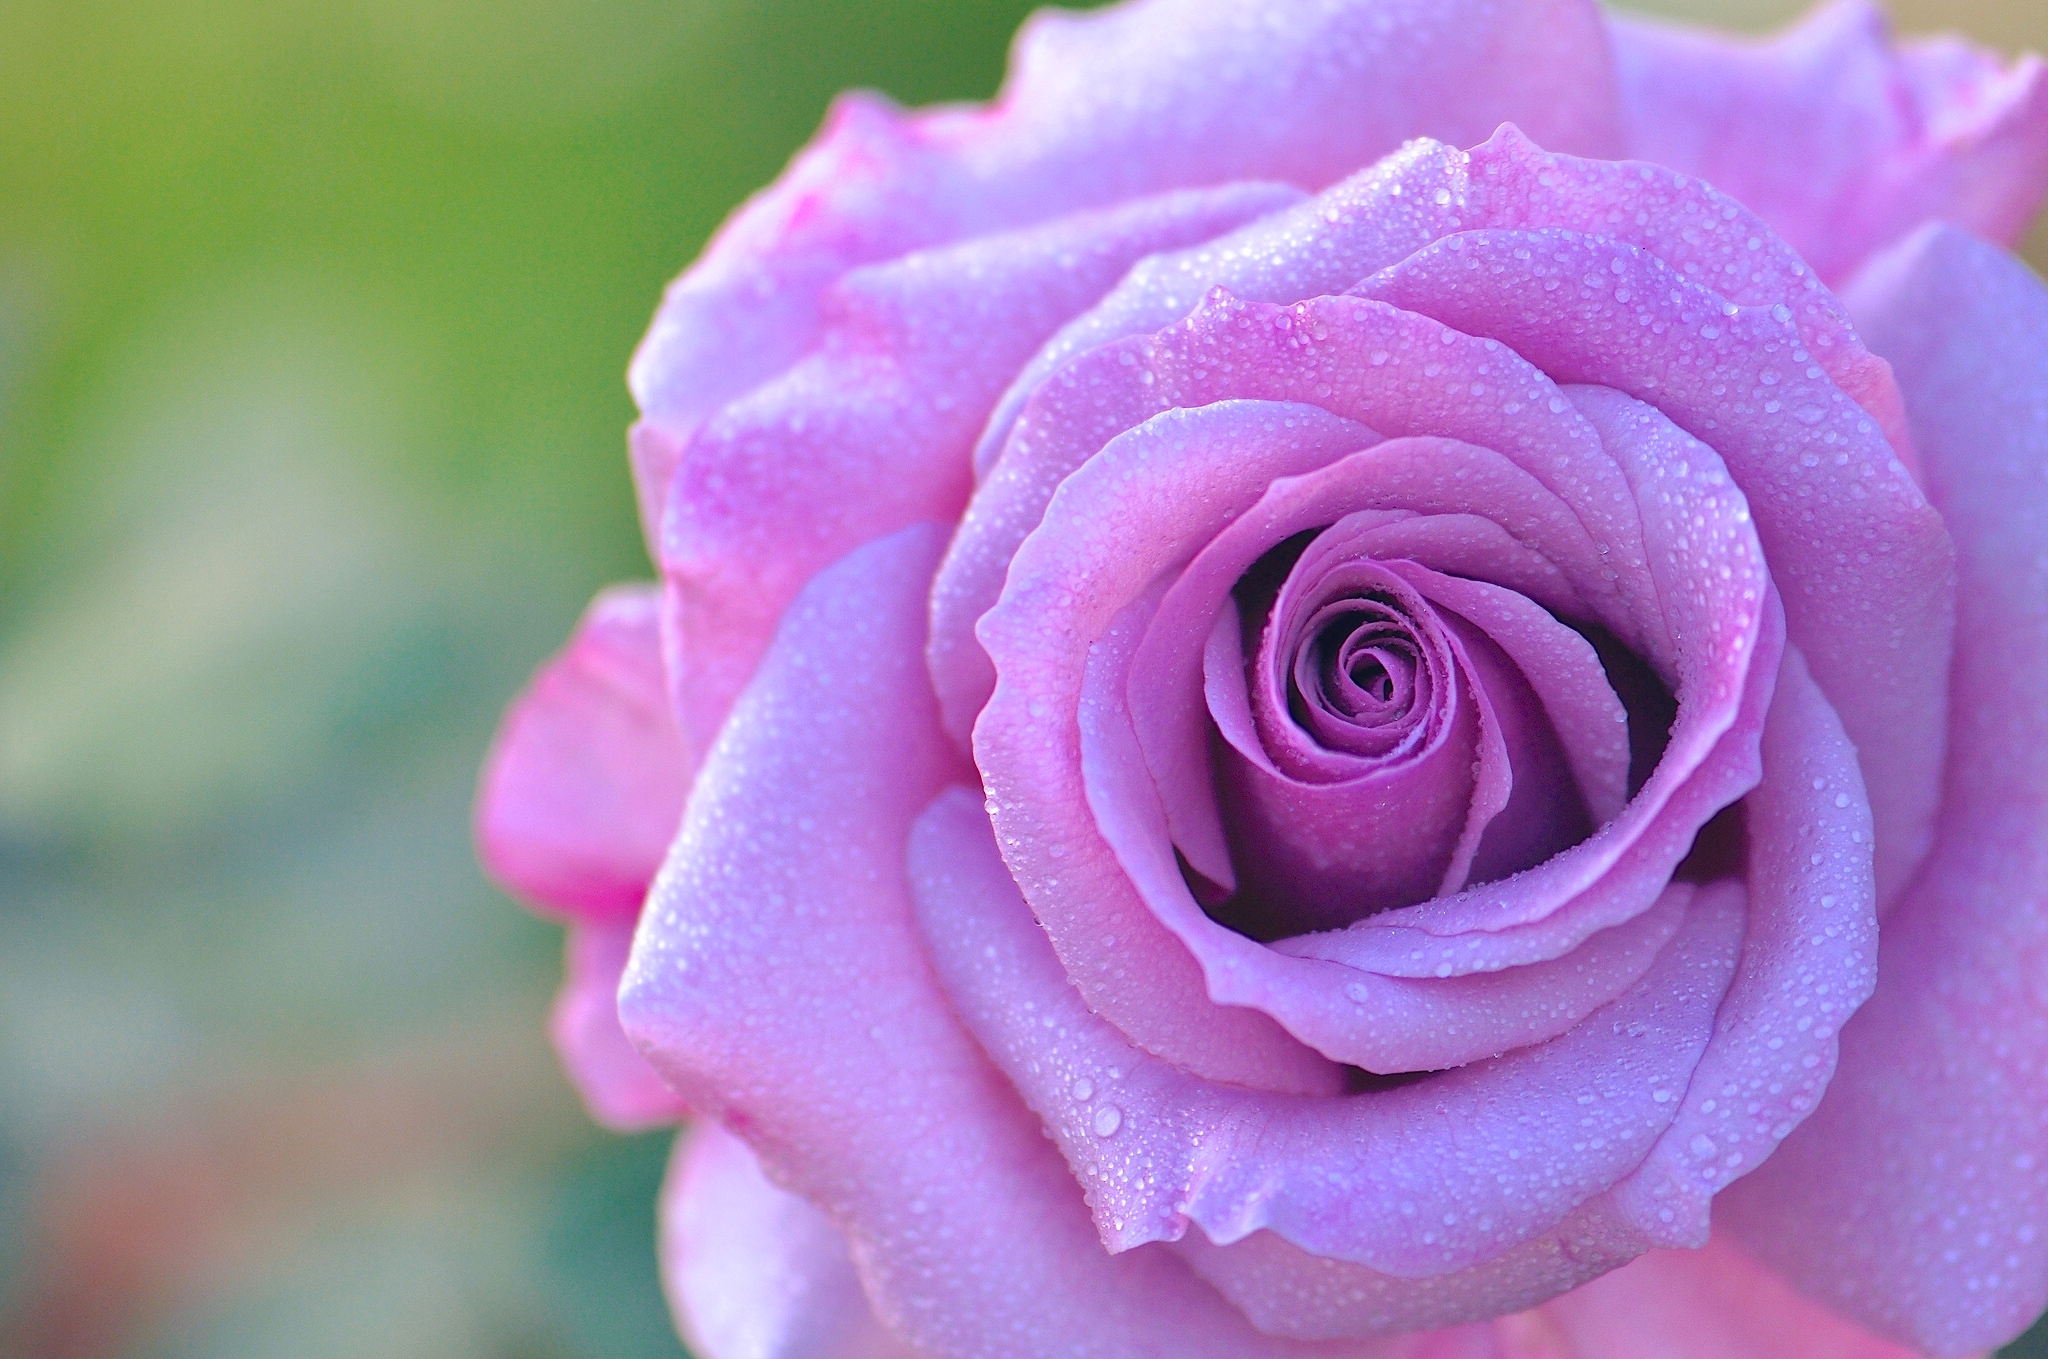 Phone Background Full HD rose, rose flower, macro, petals